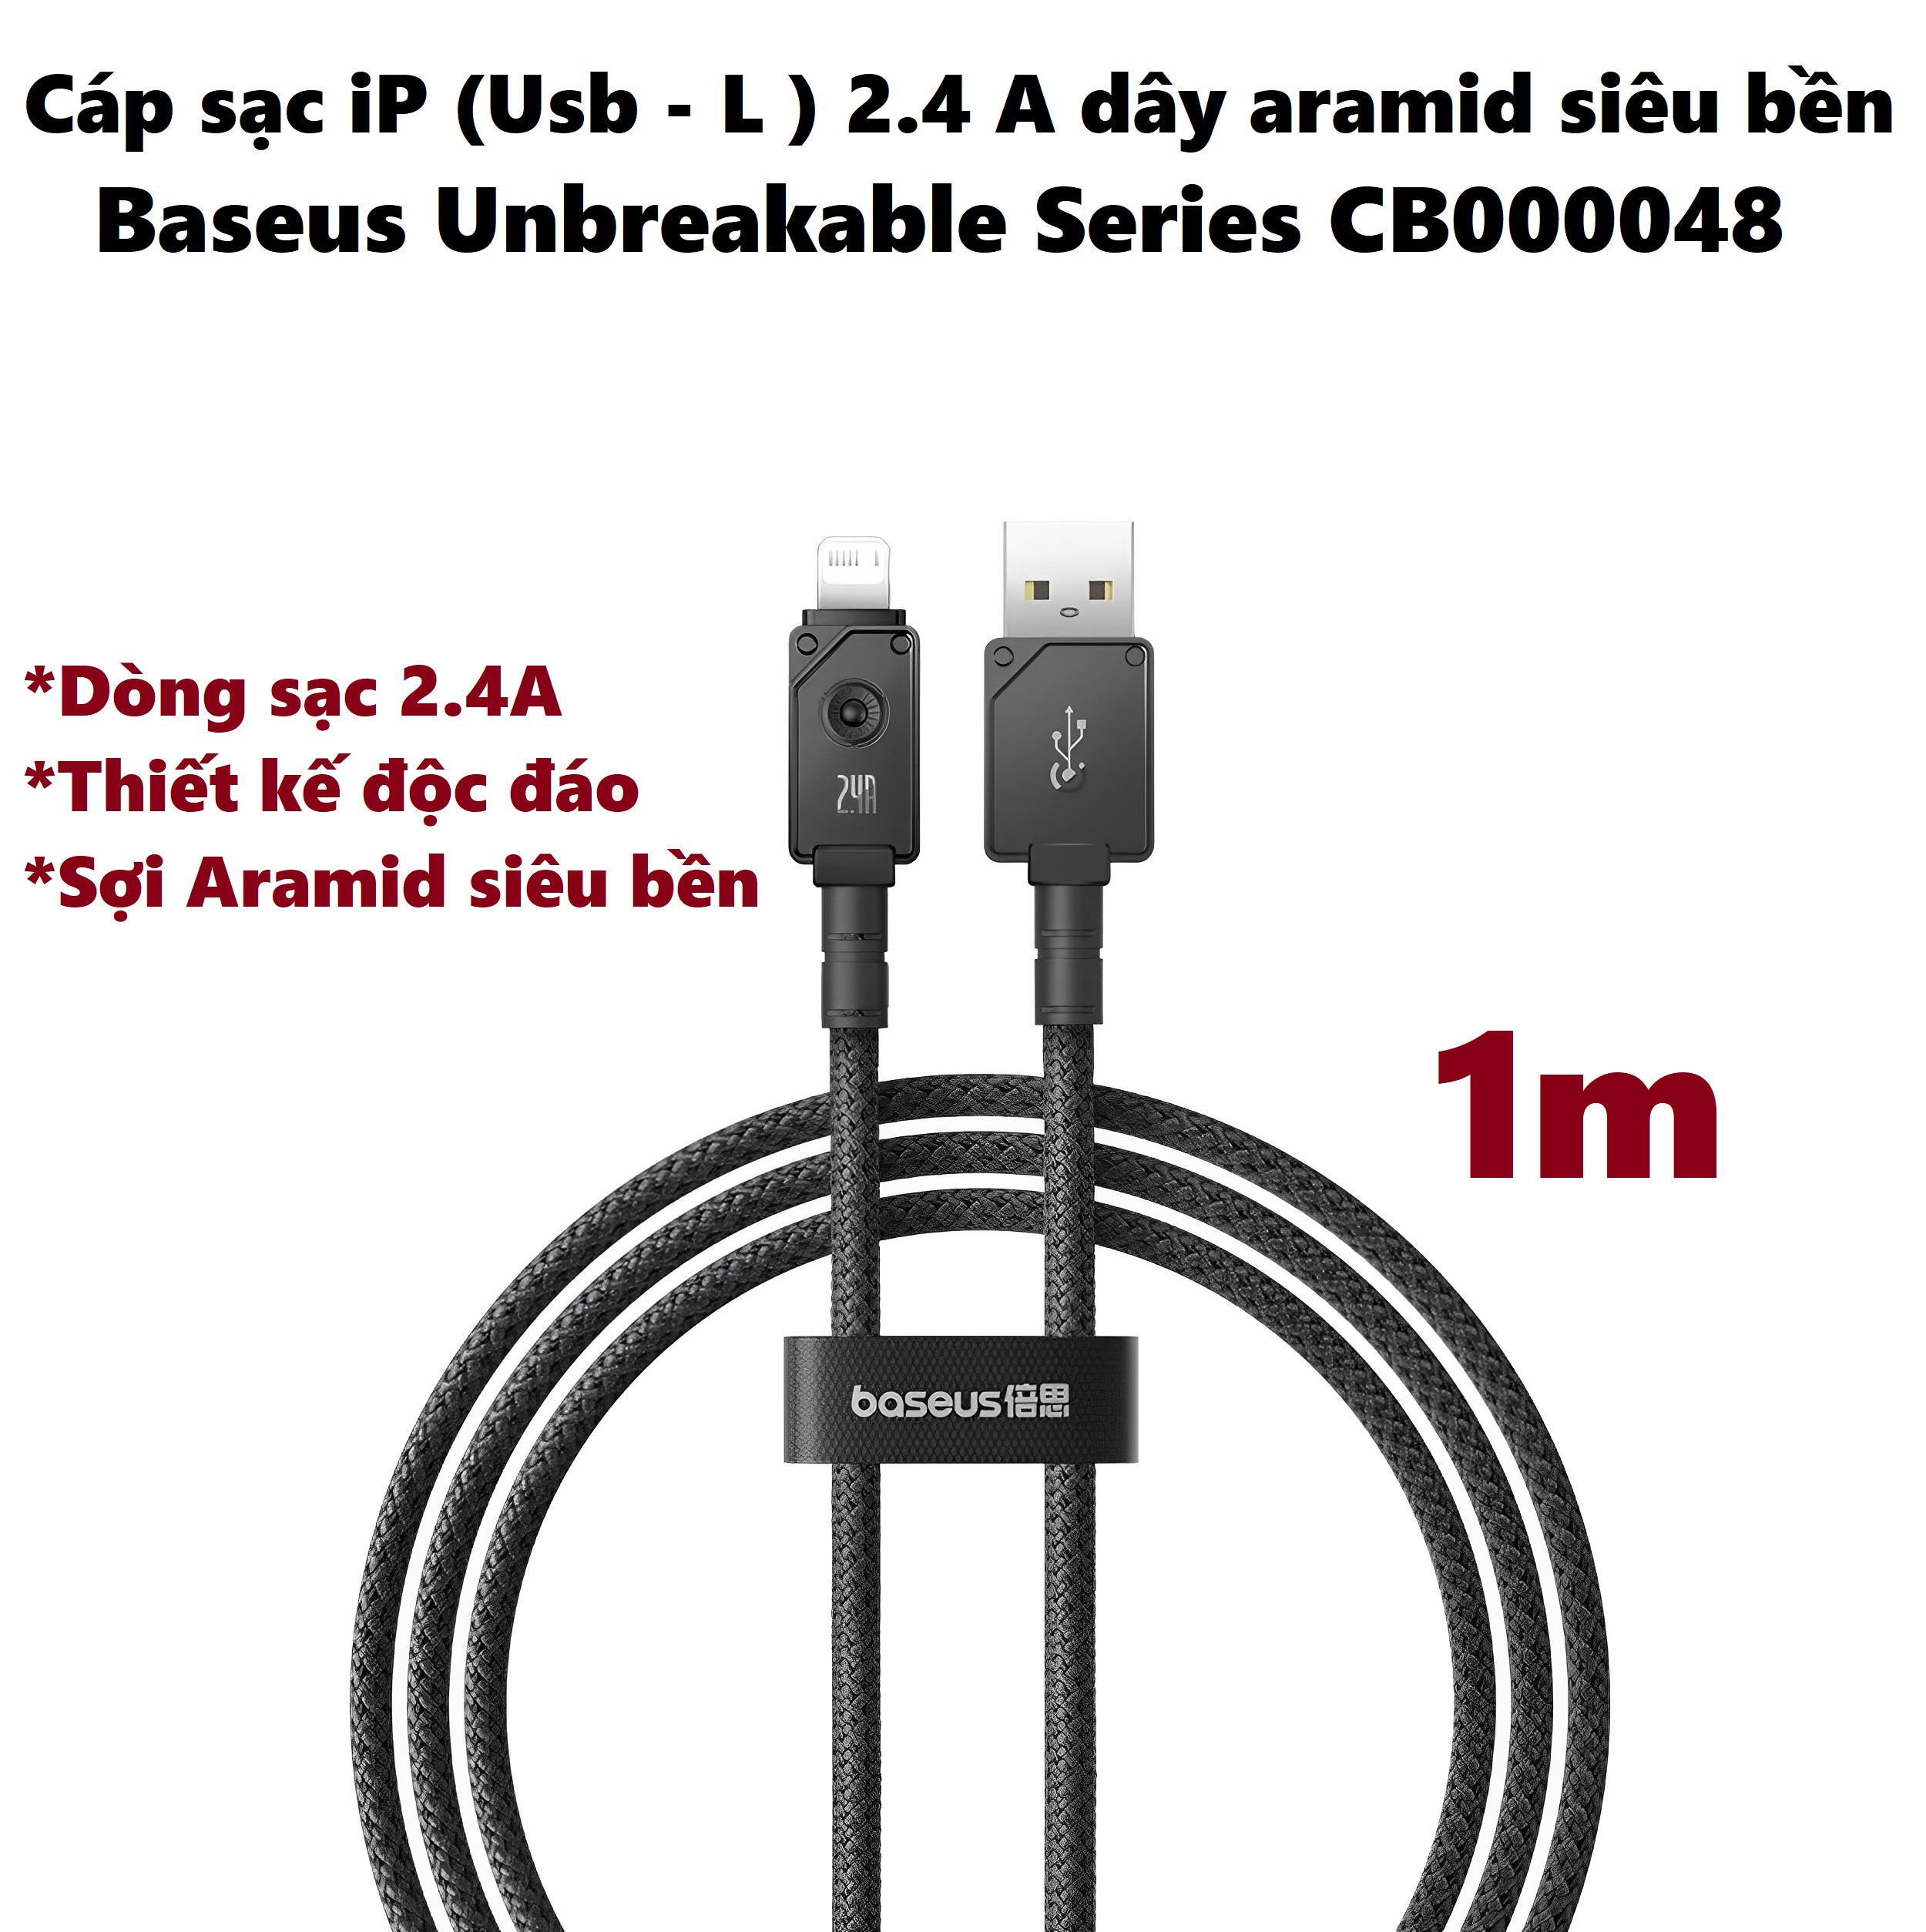 [Usb-iP ] Cáp sạc cho iP dòng sạc 2.4A dây từ sợi aramid siêu bền Baseus Unbreakable series CB000048 _ Hàng chính hãng